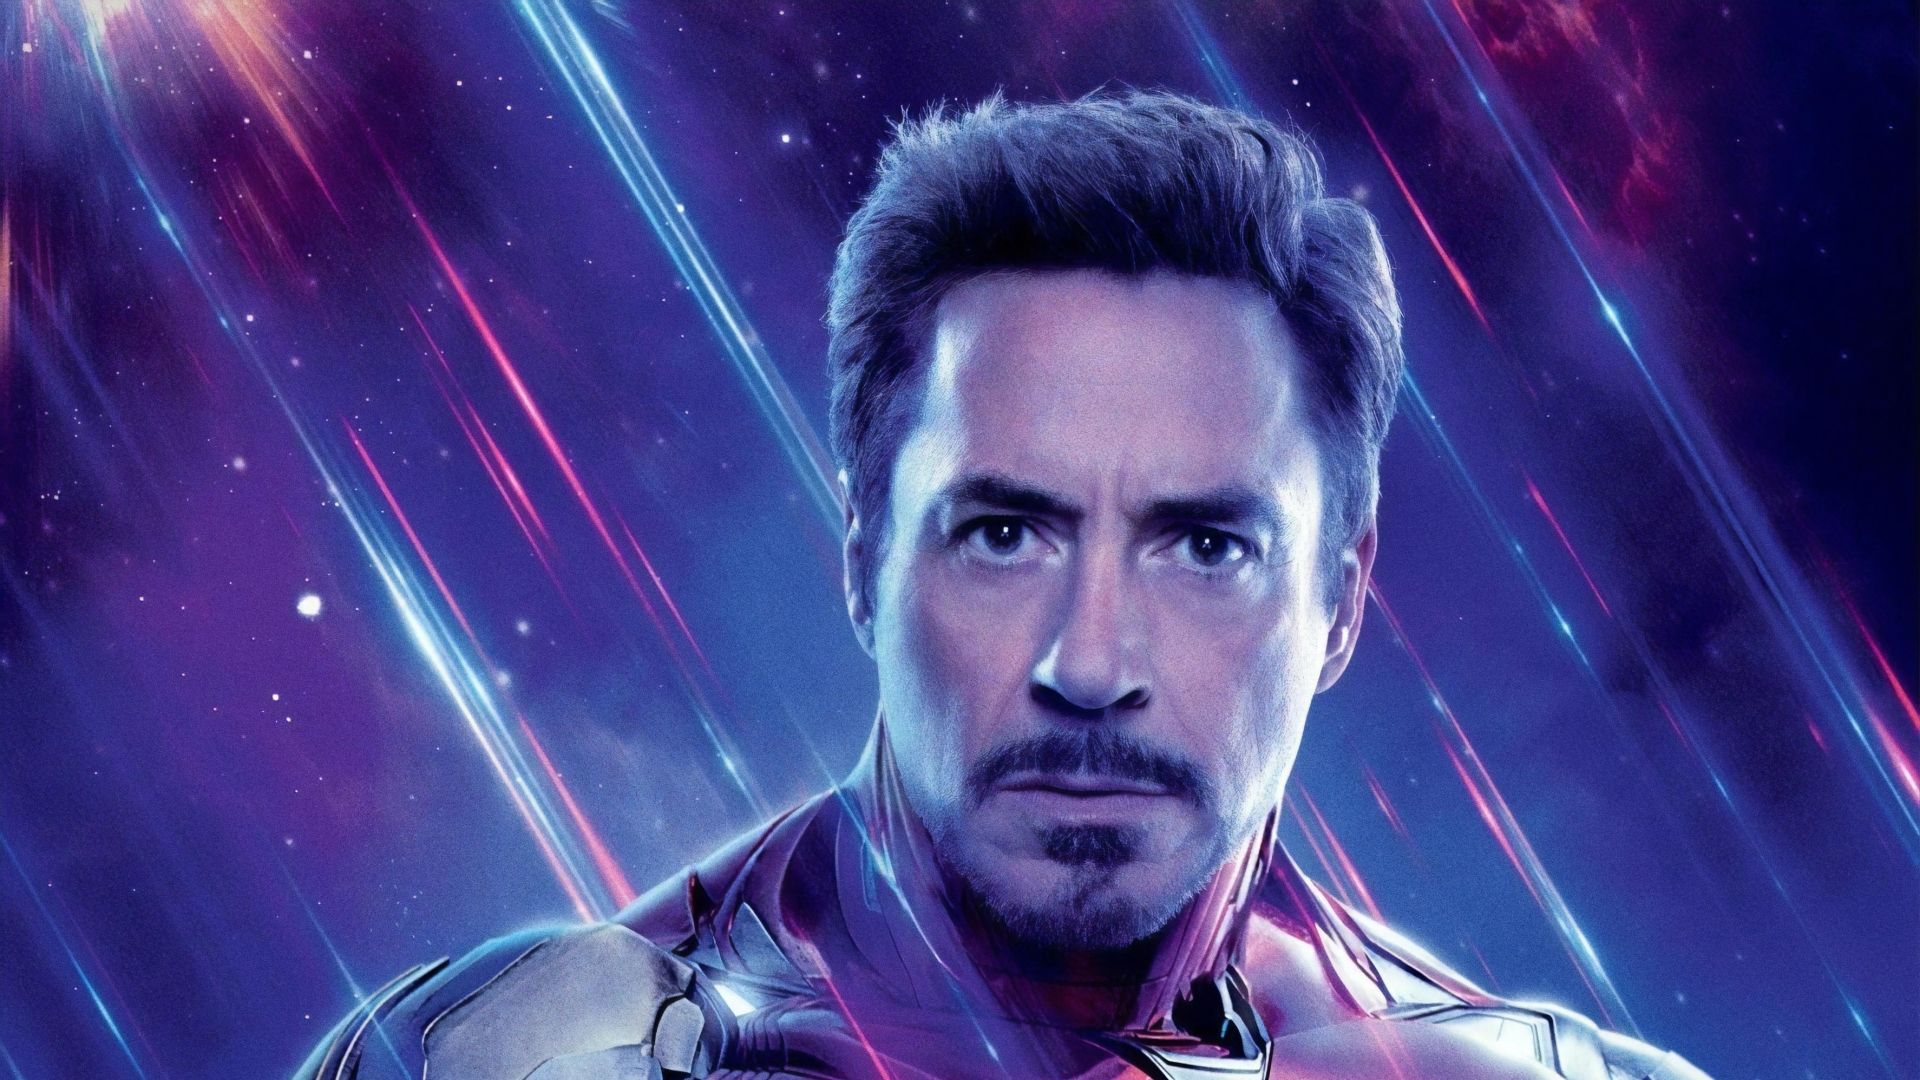 Iron Man in Avengers Endgame 1080P Laptop Full HD